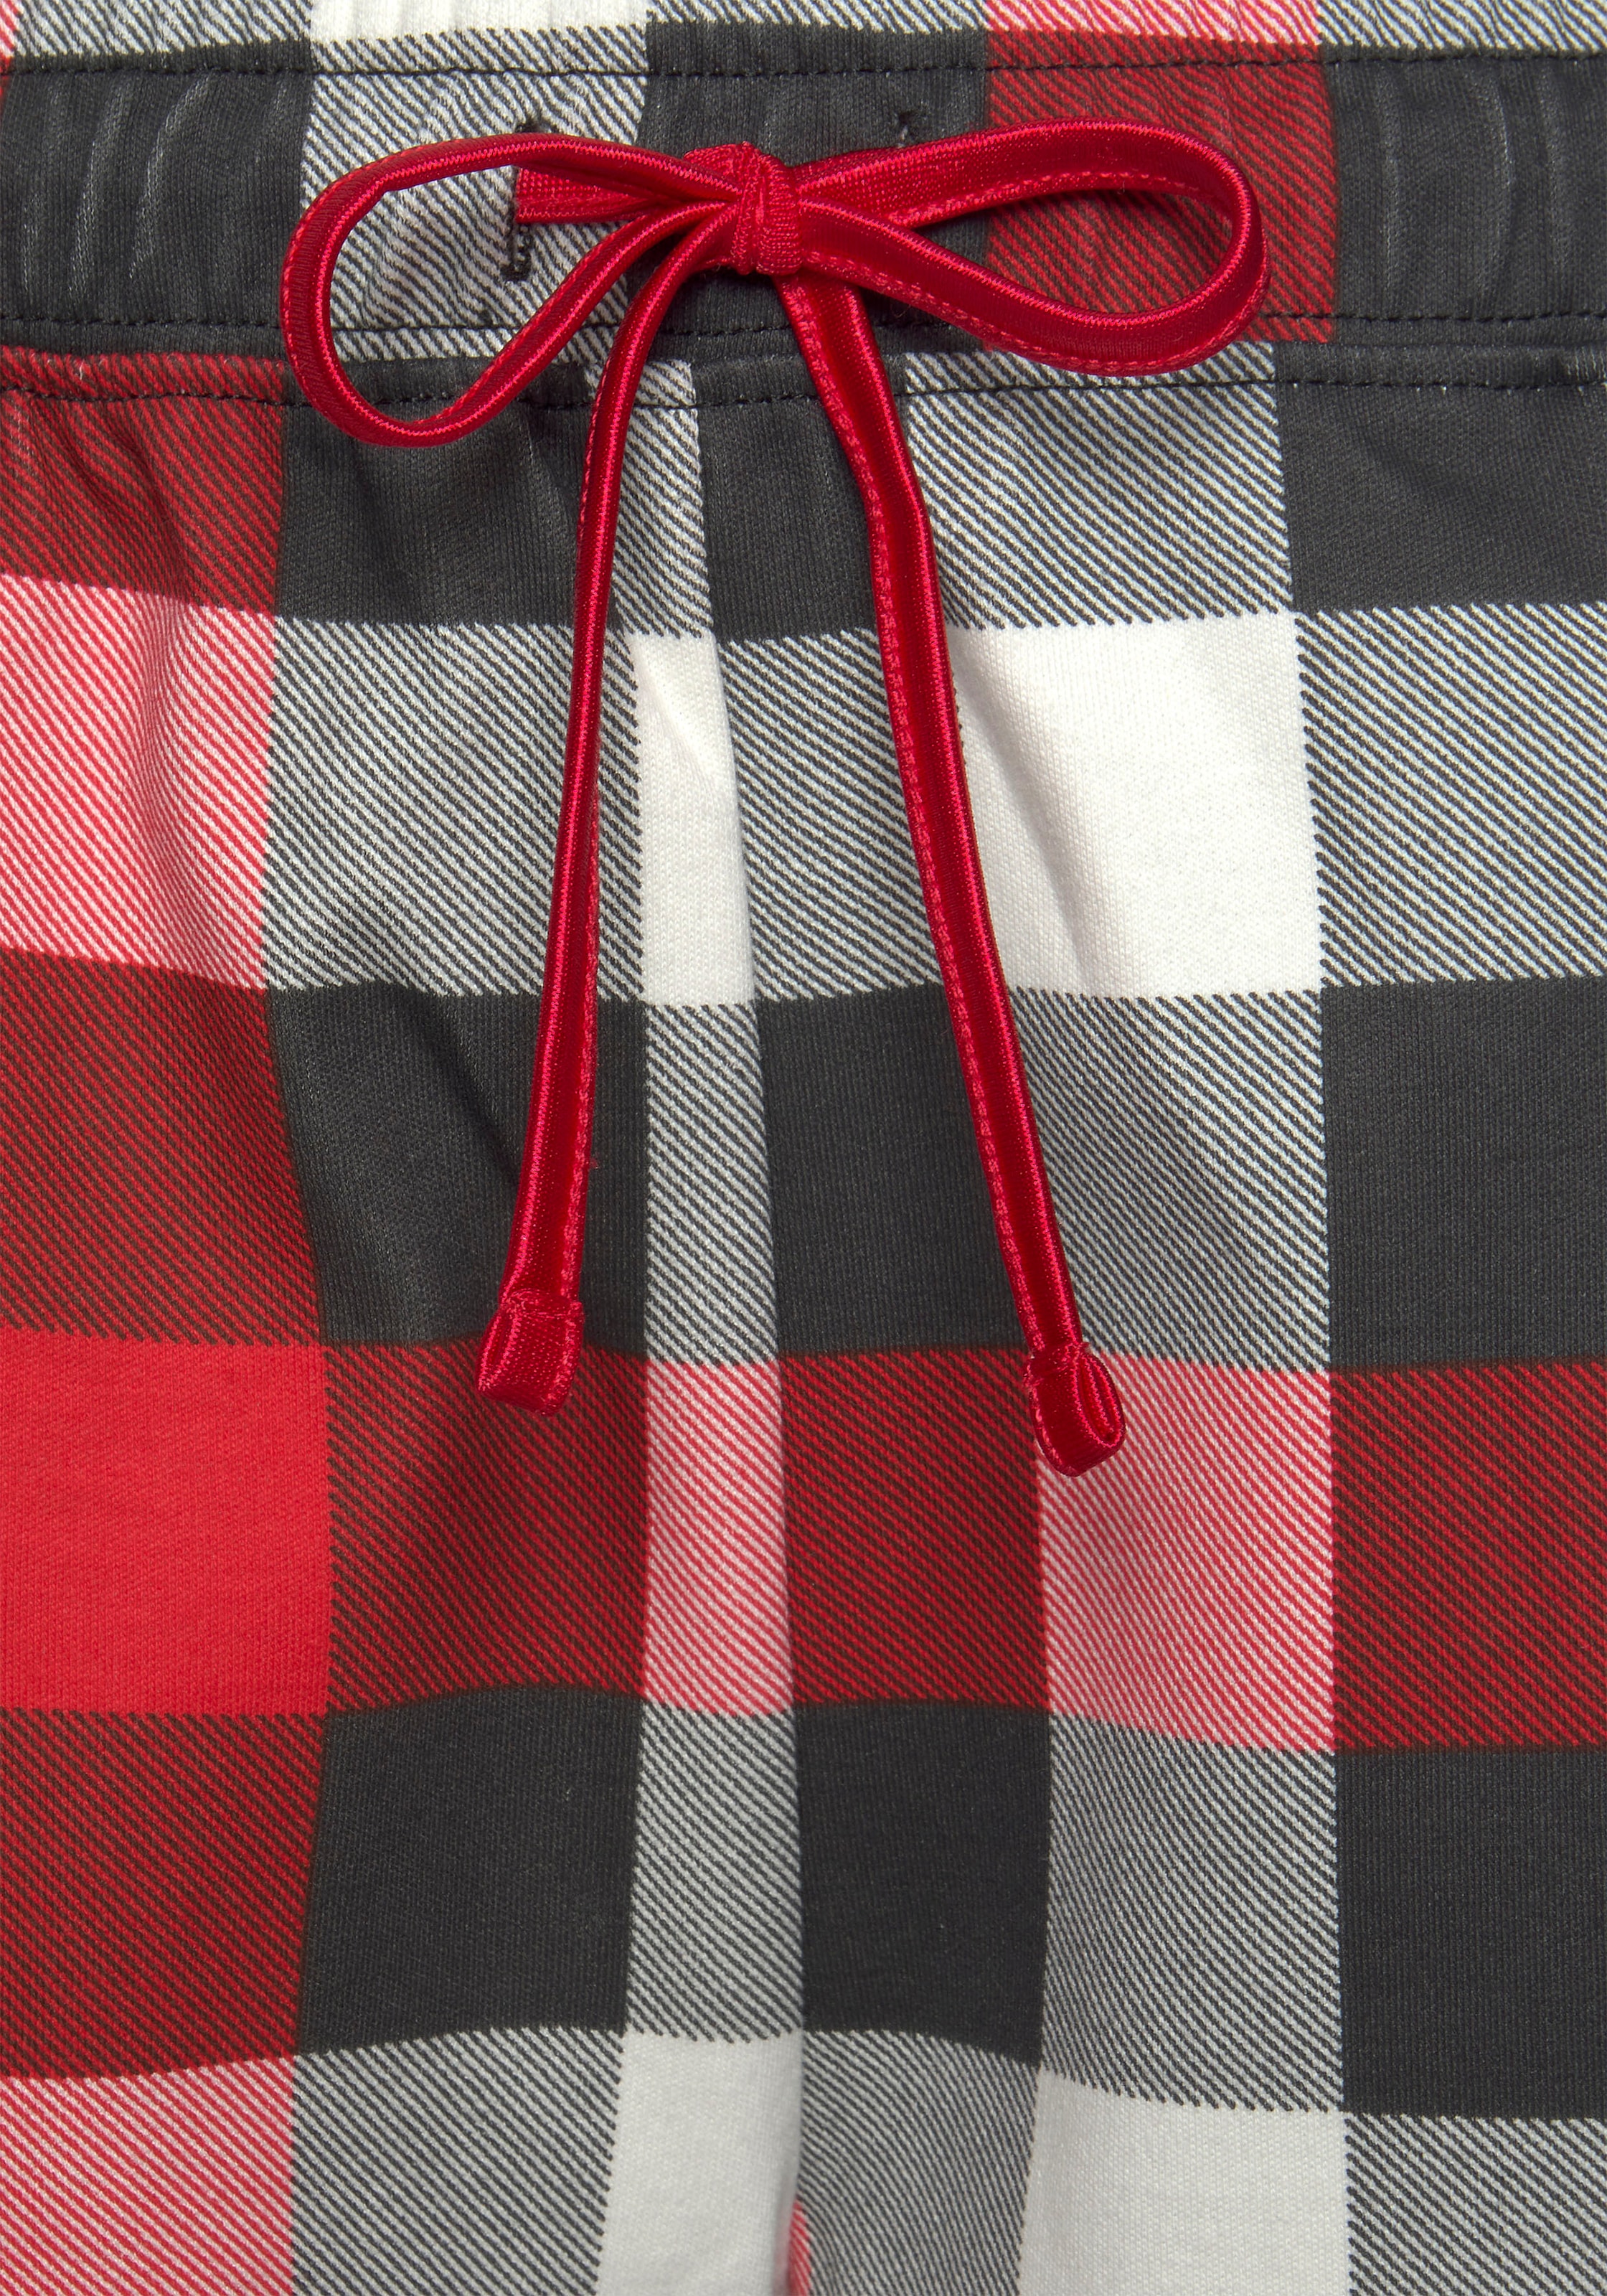 LASCANA Schlafanzug, (3 tlg., incl. Schlafmaske), mit Karodruck » LASCANA |  Bademode, Unterwäsche & Lingerie online kaufen